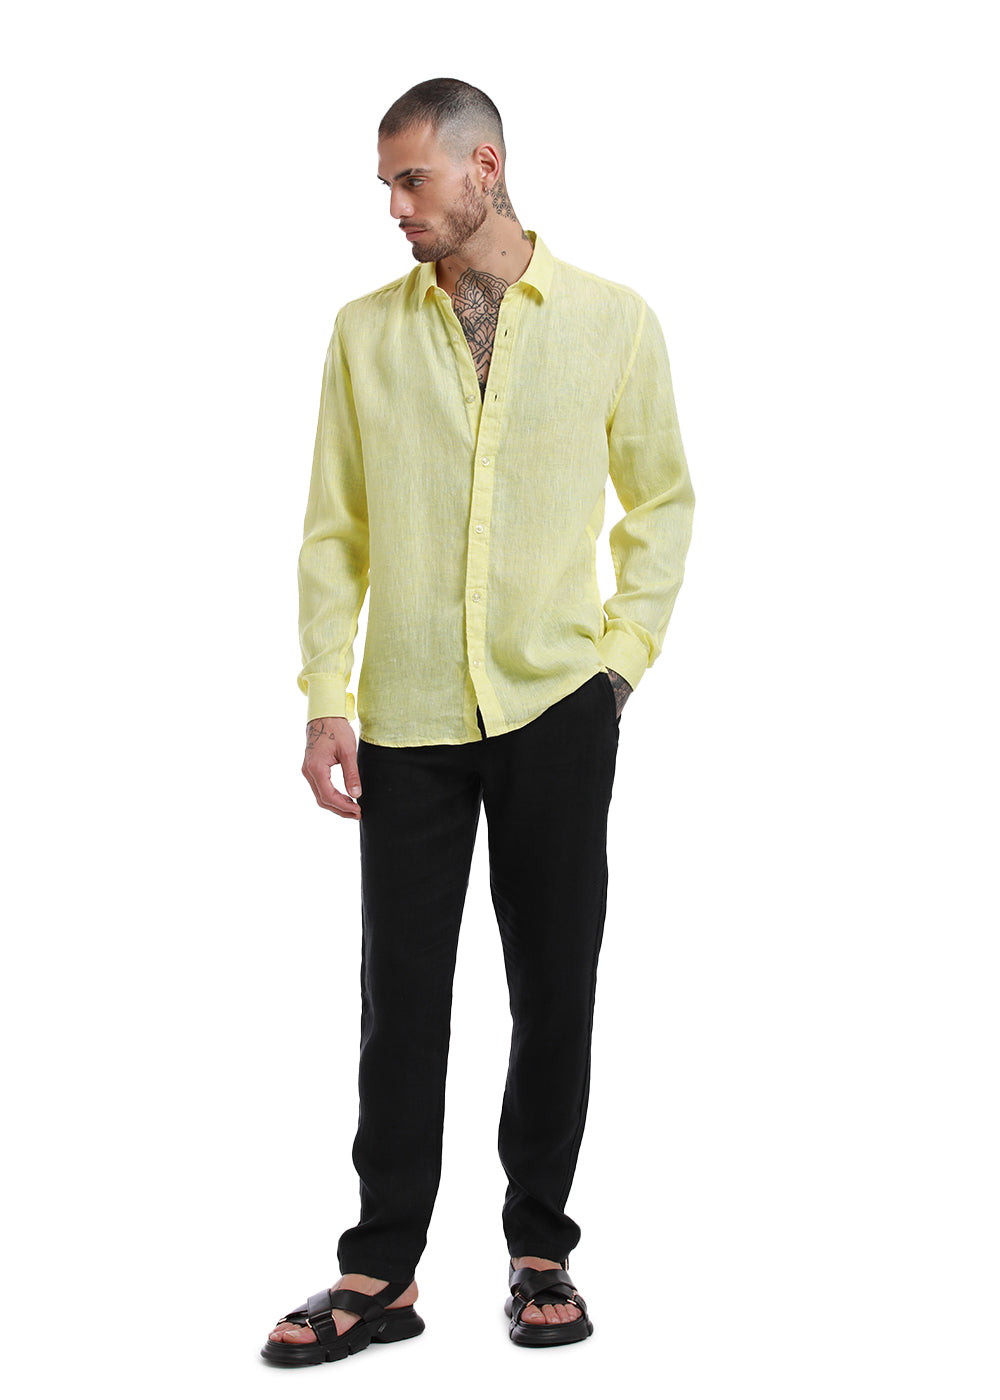 Lemon Yellow Pure Irish Linen Shirt